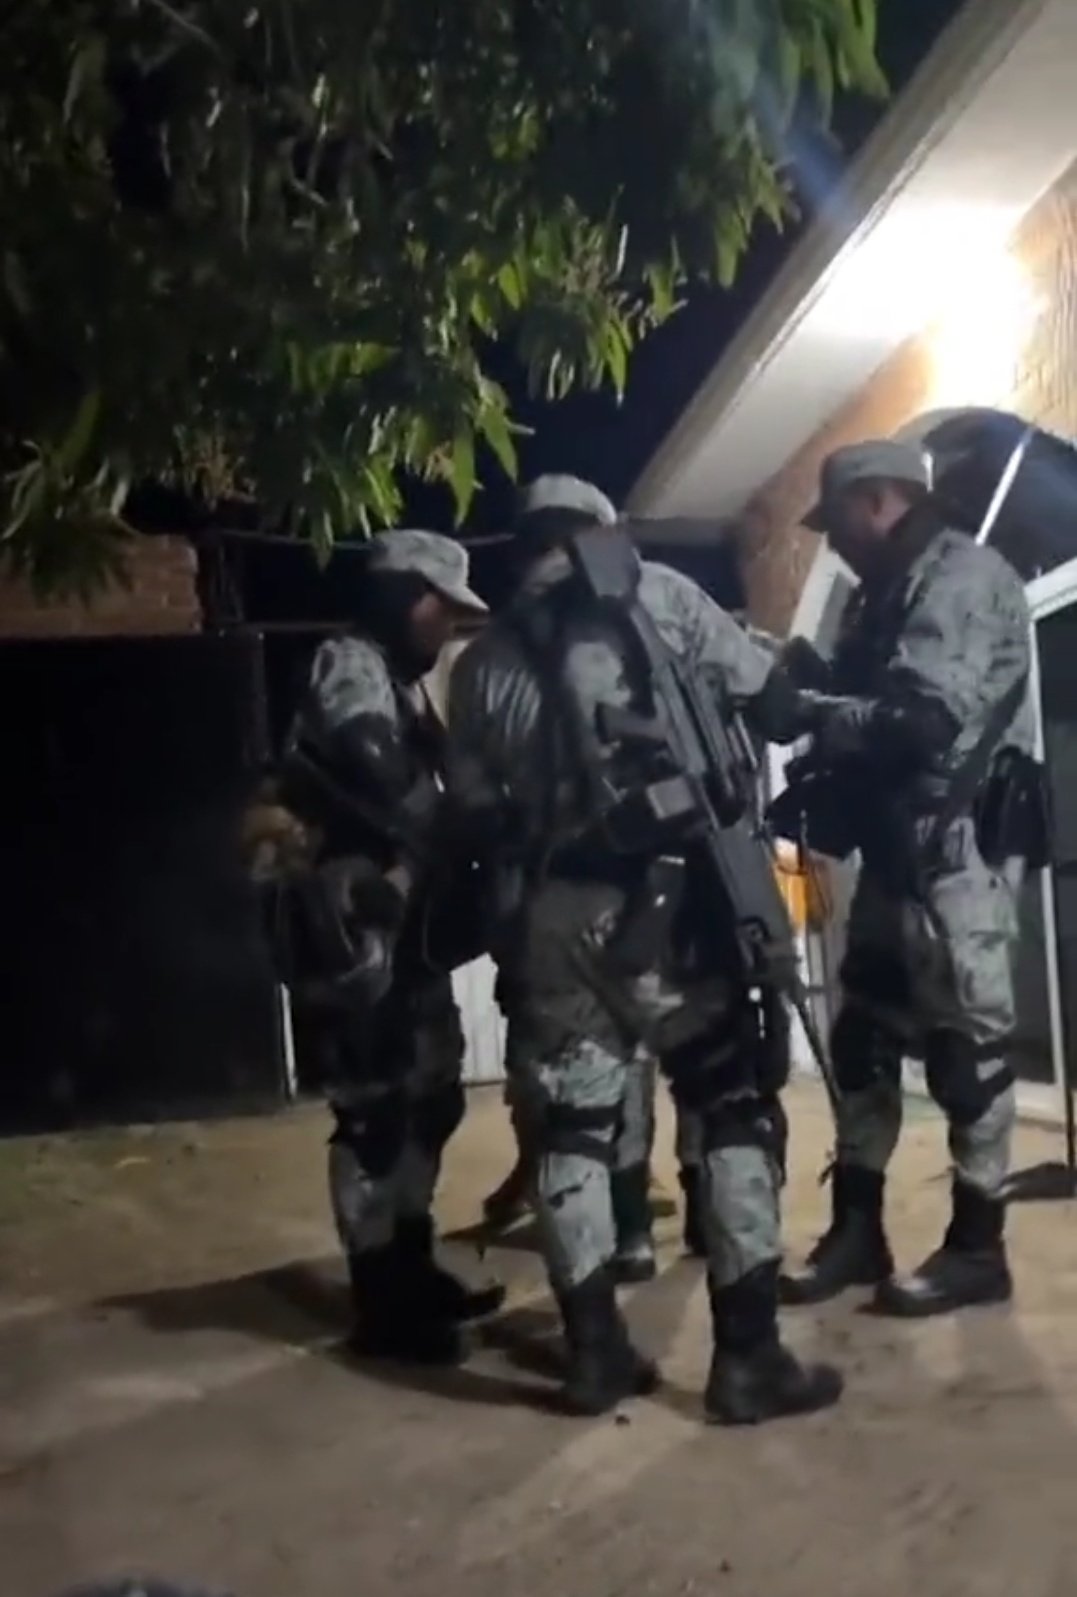 Sicarios del CJNG portanod uniformes militares en el estado de Guerrero (Twitter)